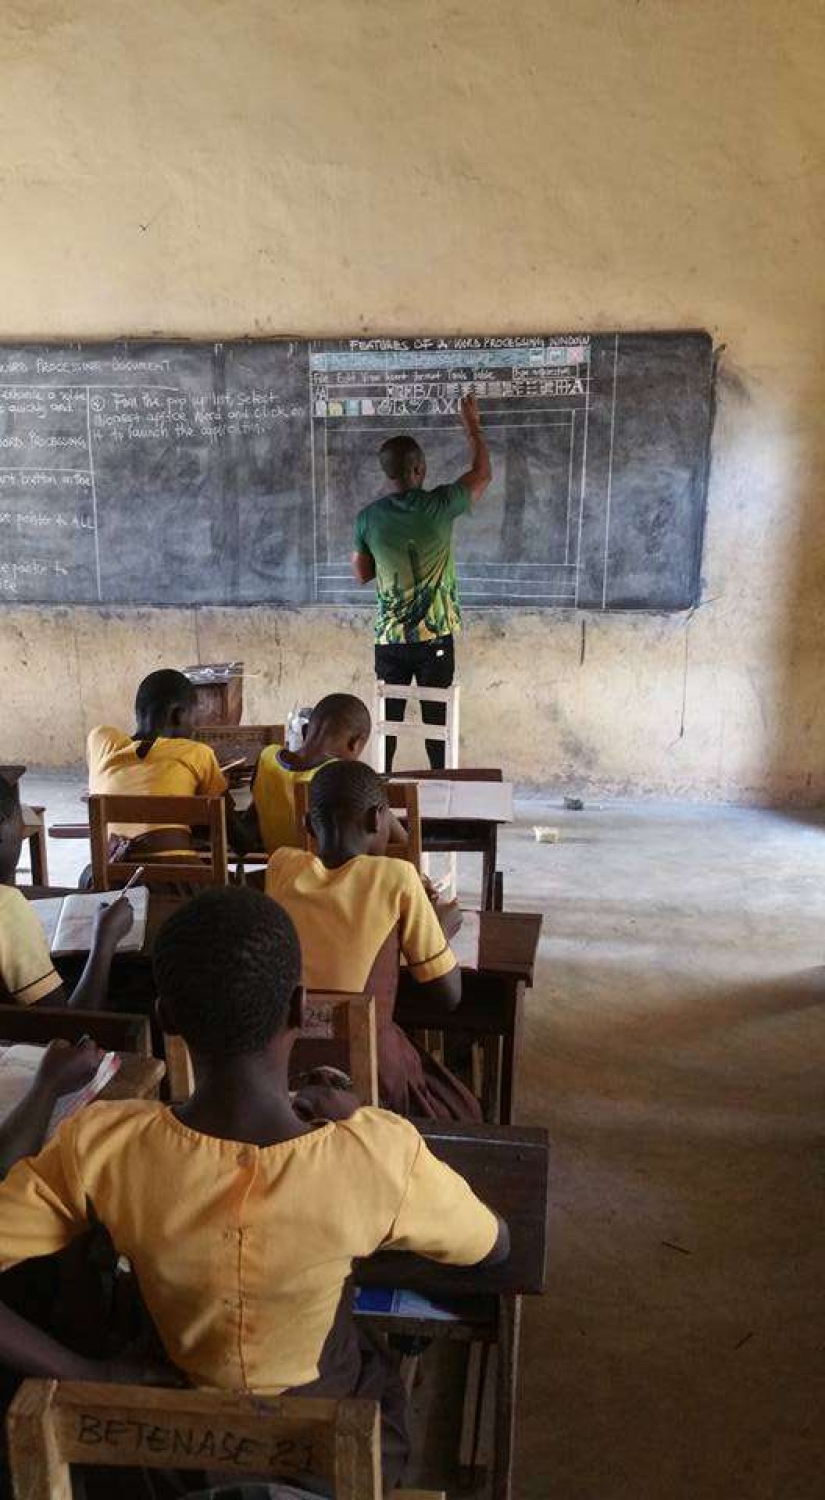 Microsoft Word, pizarra, tiza: la foto de un profesor de informática en una escuela de una aldea en Ghana voló por las redes sociales